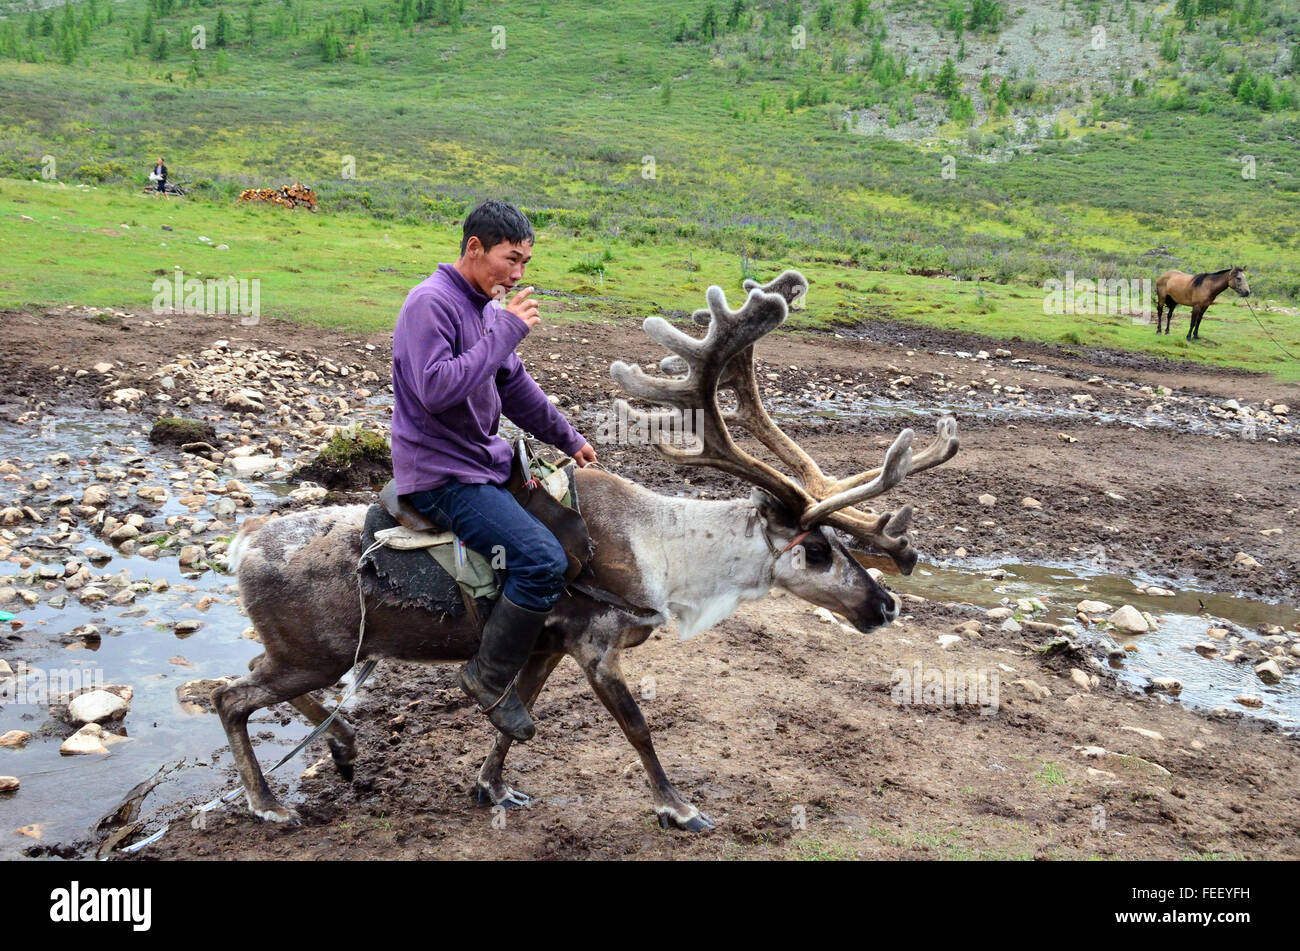 Duhkha (same as Tsaatan) man riding his reindeer Stock Photo